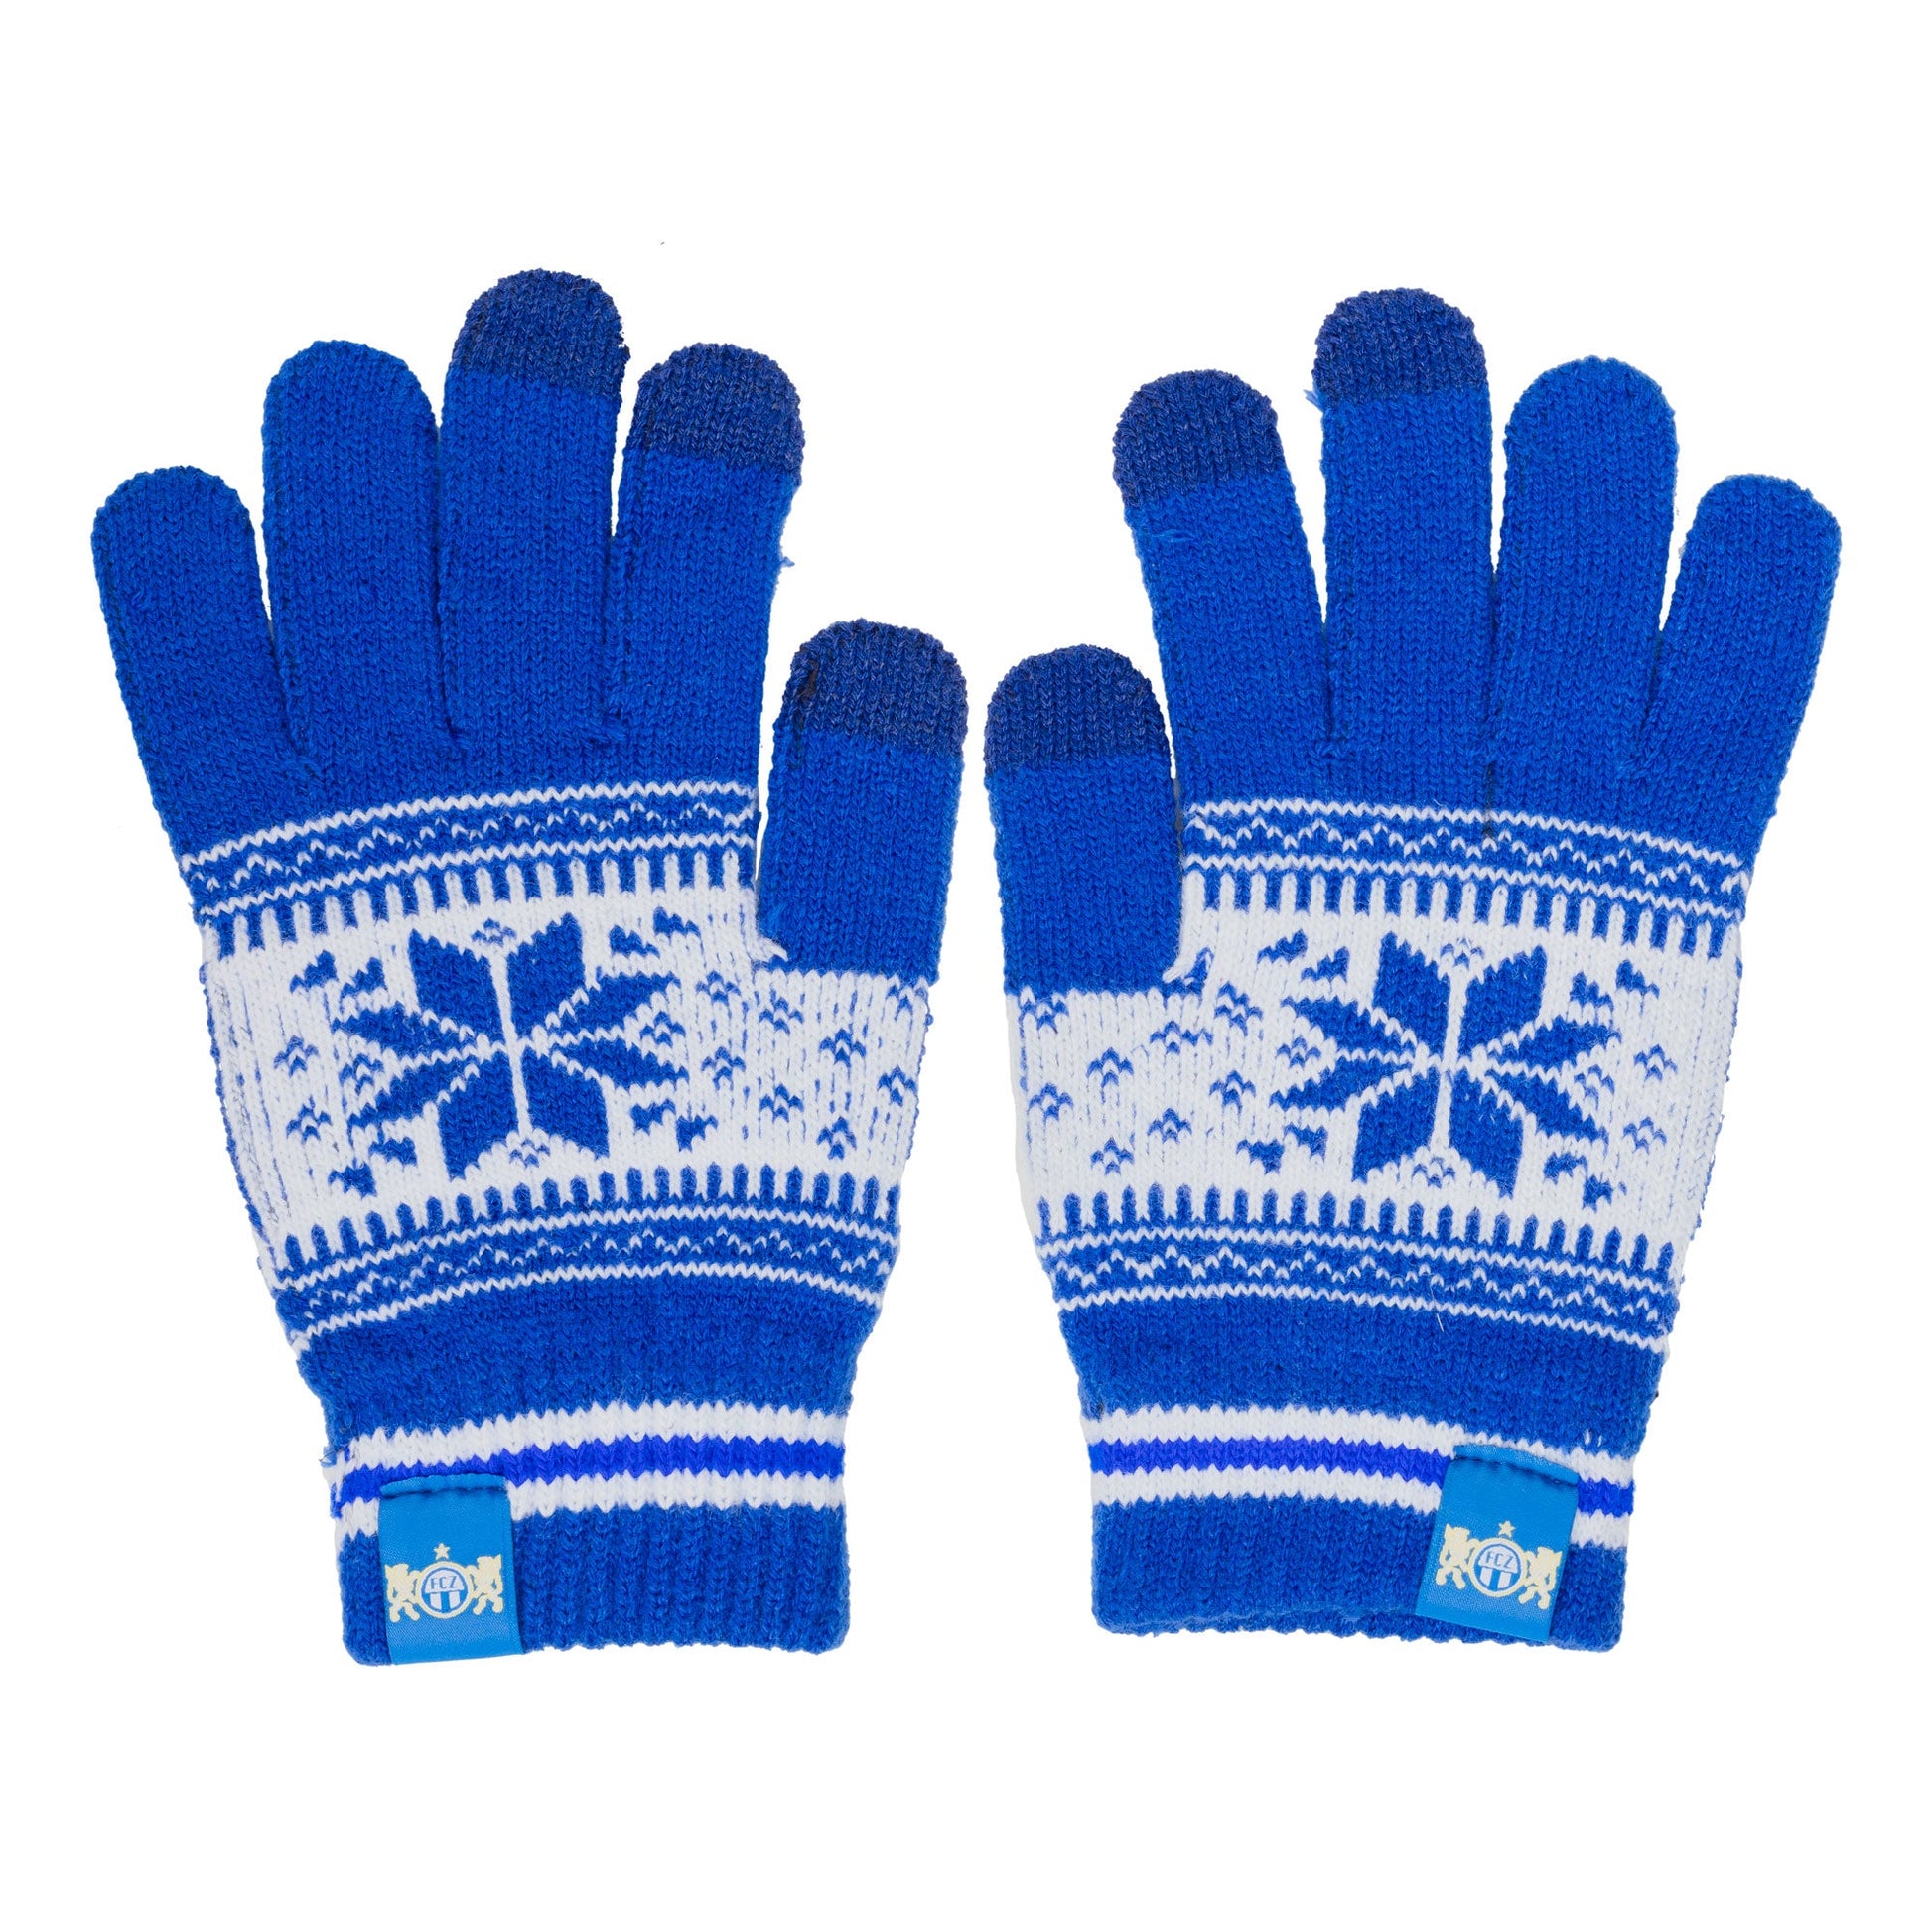 Handschuhe FA15 blau/navy